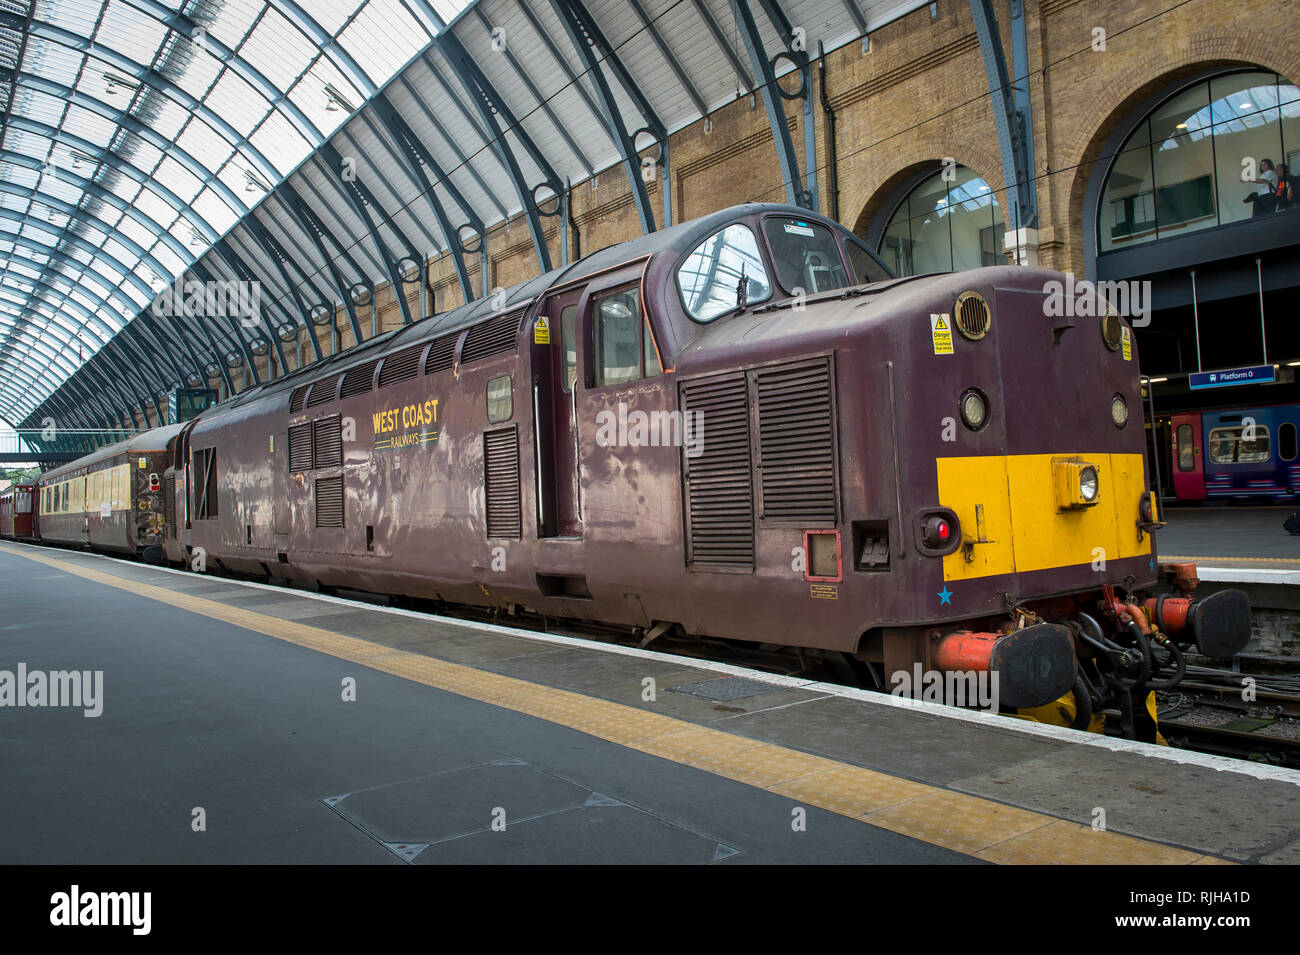 Chemins de fer de la côte ouest de la locomotive du patrimoine en attente à une plate-forme de Londres à la gare de Kings Cross, Londres, Angleterre. Banque D'Images